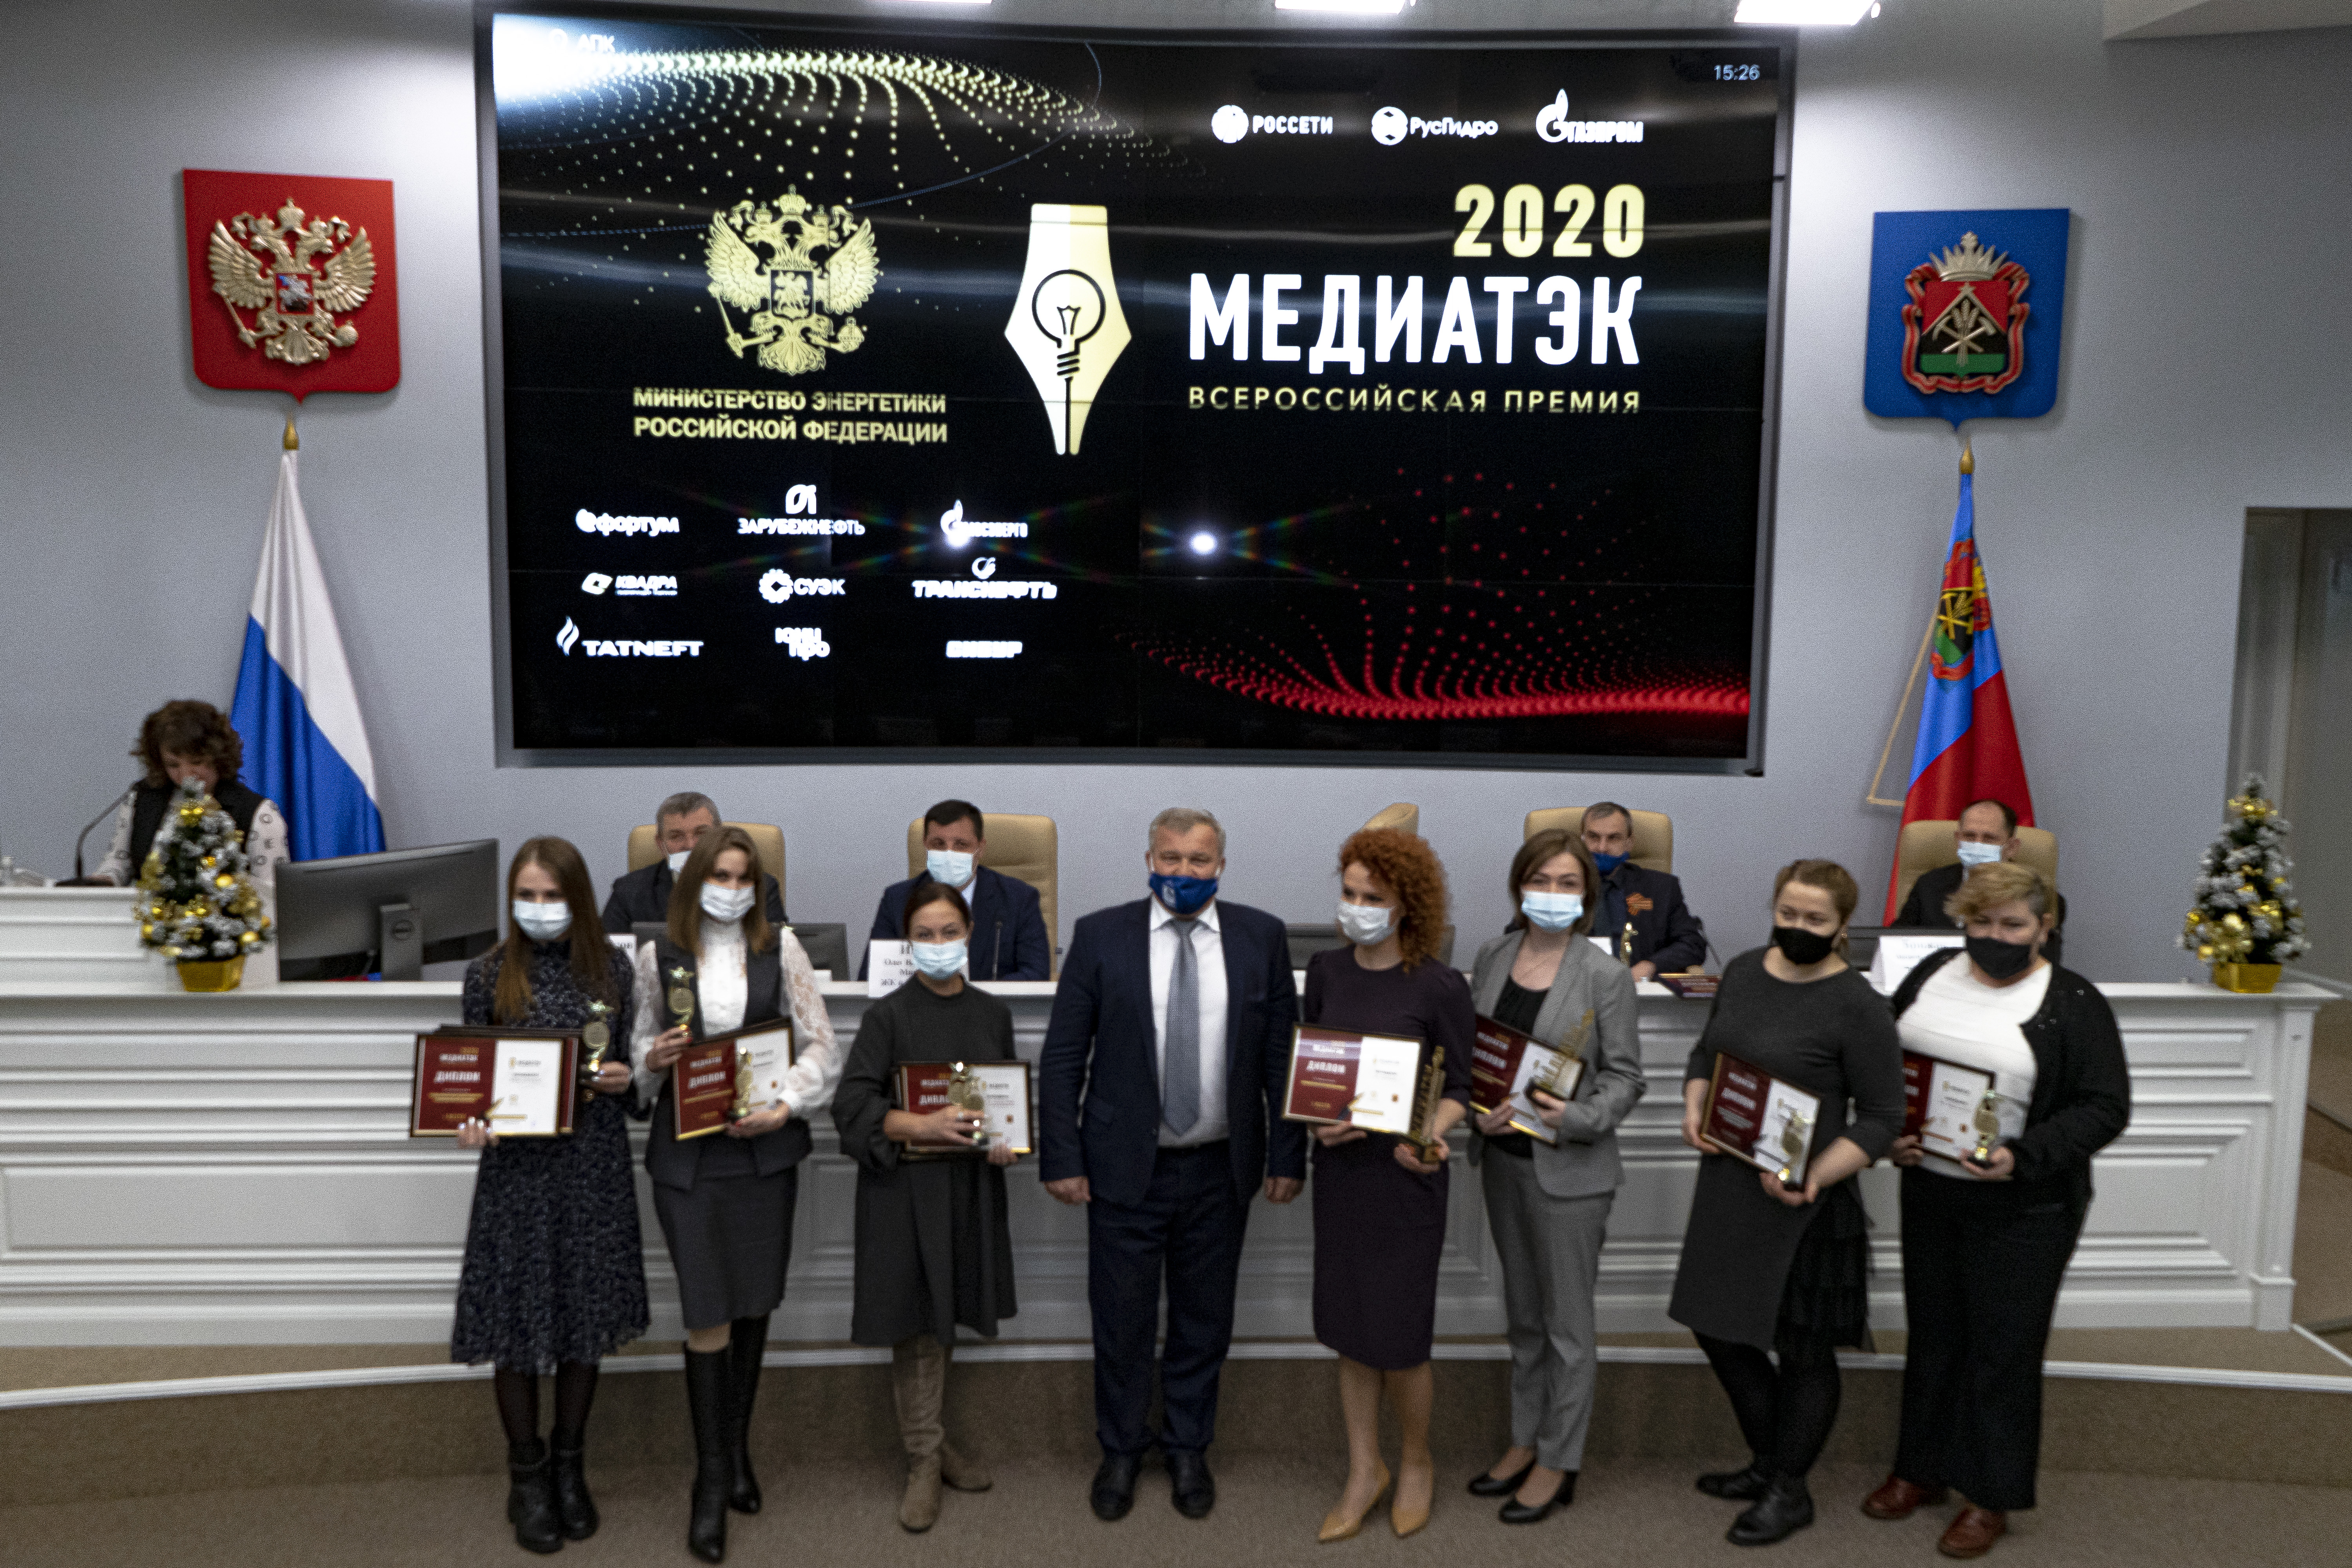 Награда за 1 место во всероссийском конкурсе МедиаТЭК вручена компании АО Стройсервис. Стройсервис